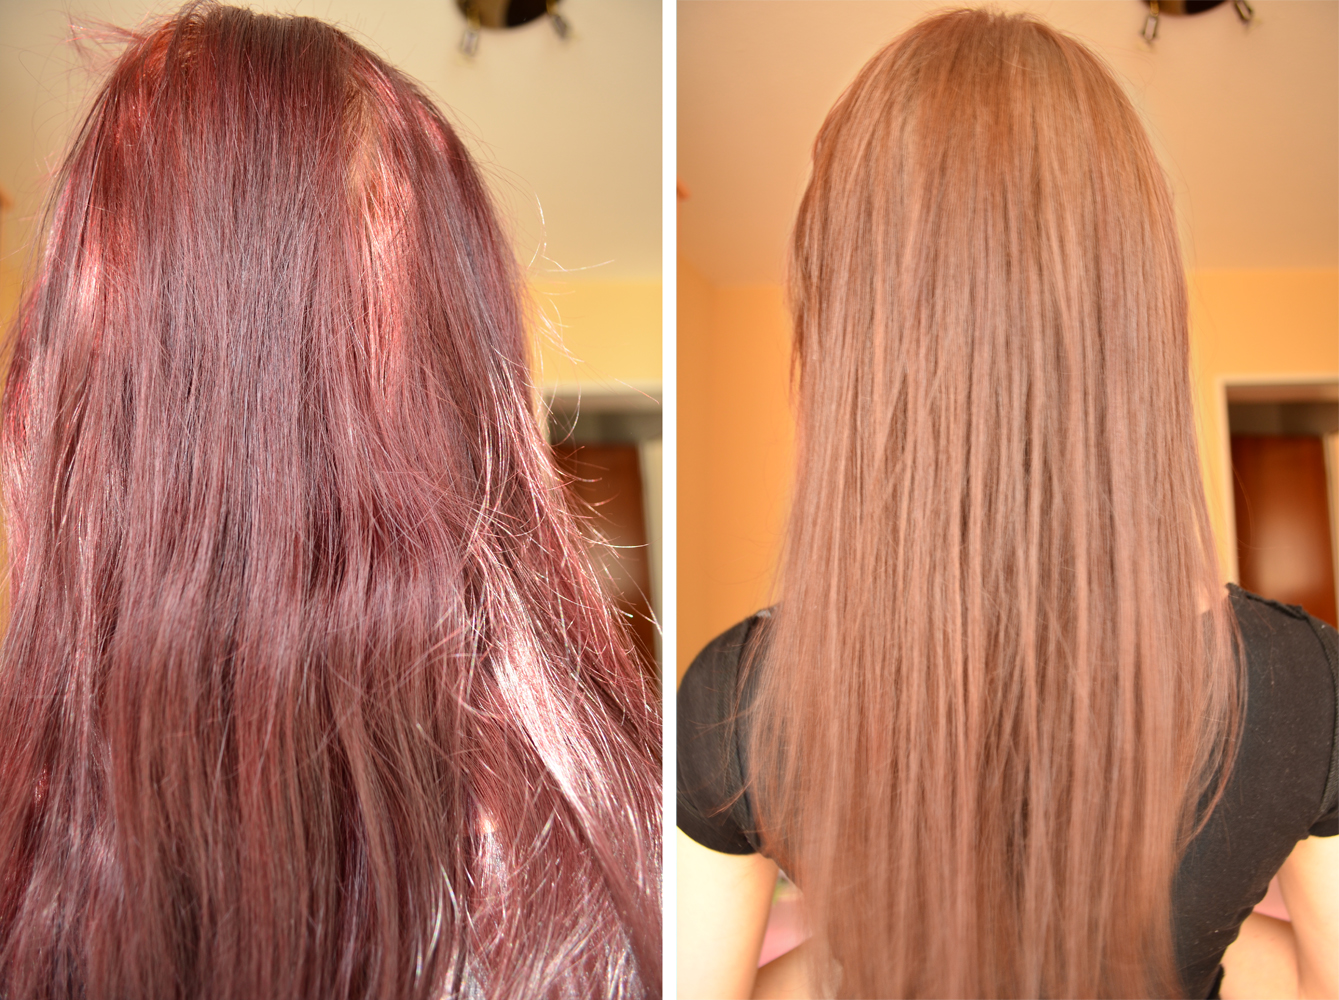 Смывка волос домашними средствами. Волосы после смывки. Смывка красного цвета с волос. Красный цвет волос после смывки. Волосы после смывки до и после.